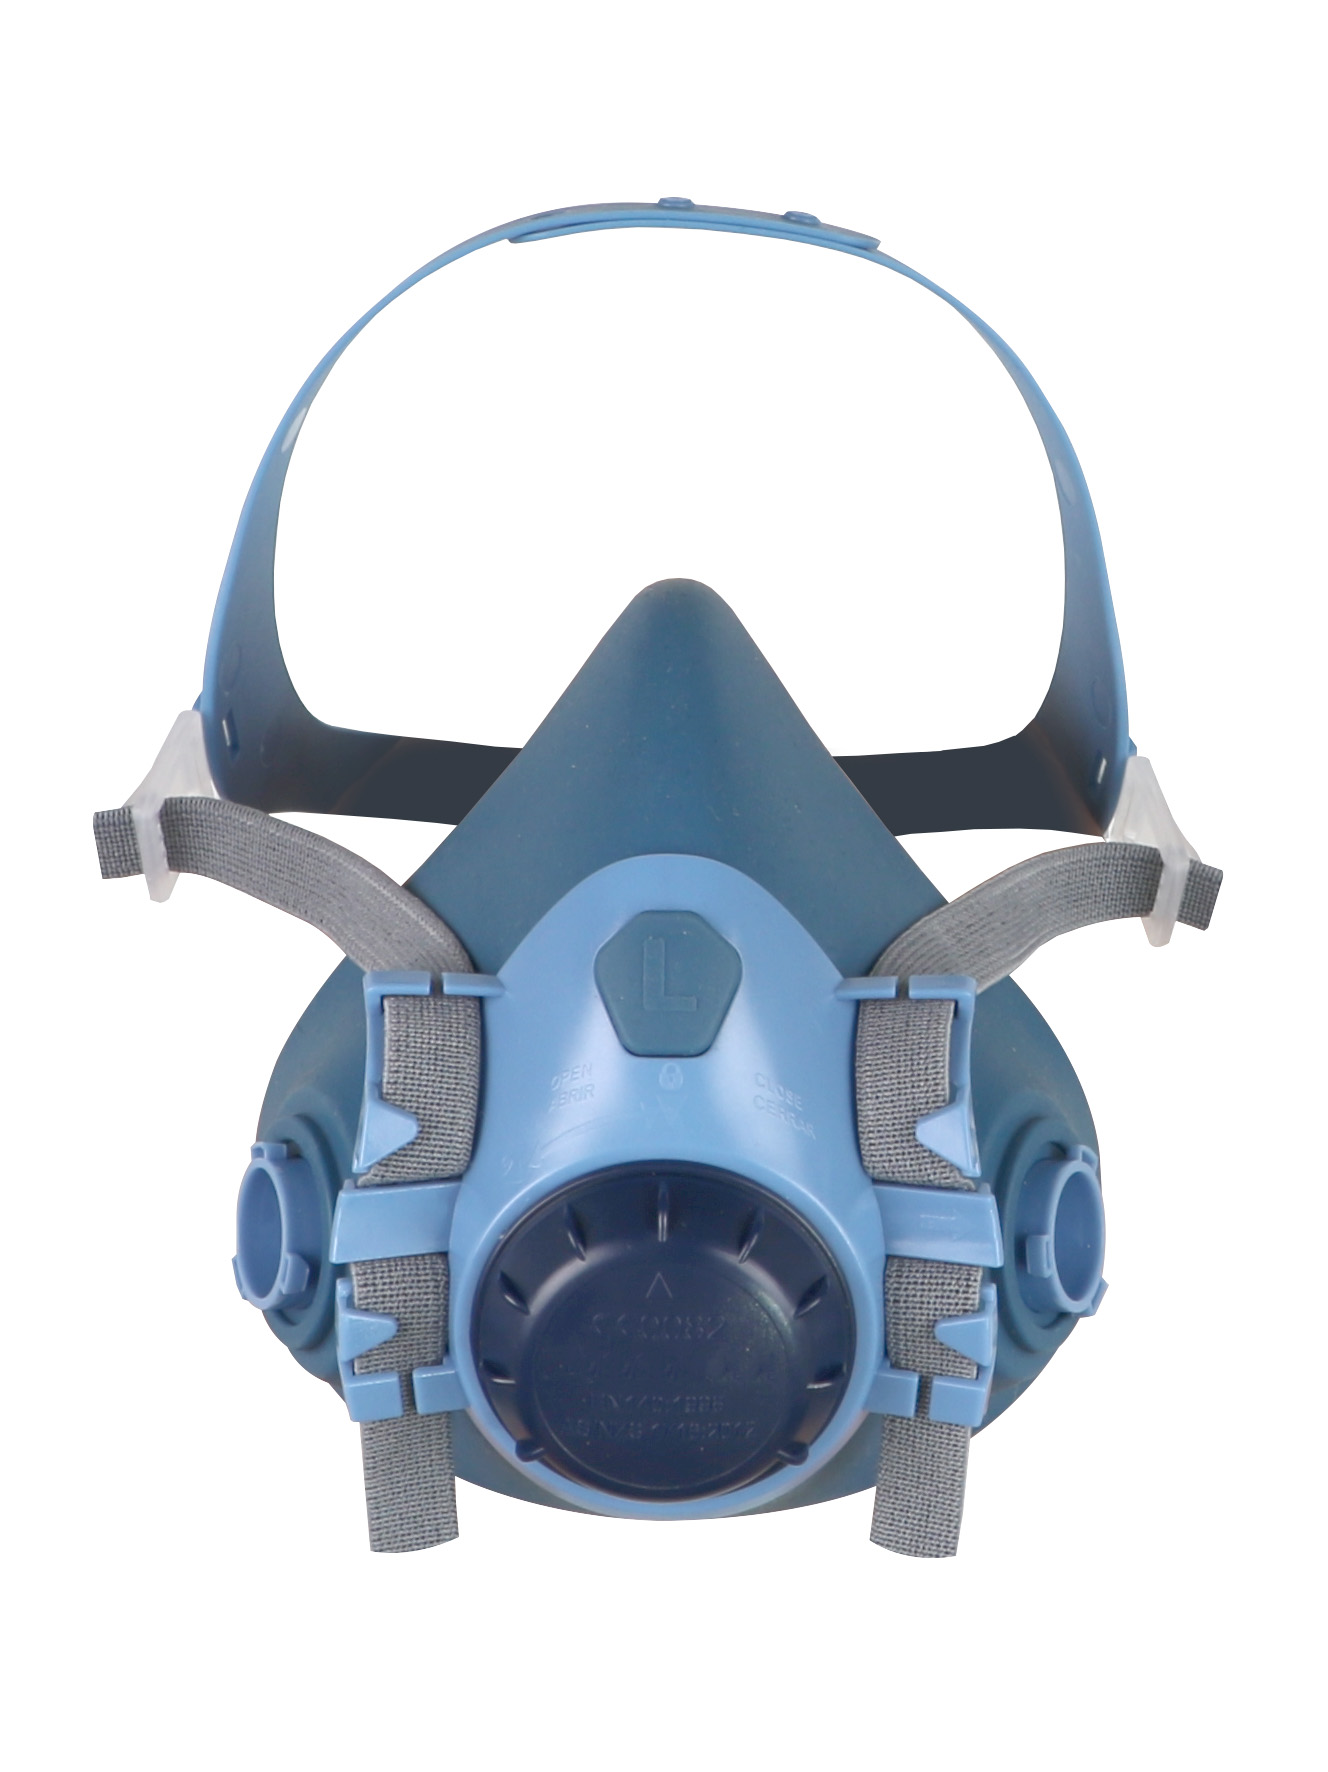 Article - Demi-masque respiratoire en silicone. Conçu pour adapter 2  filtres à baïonnette